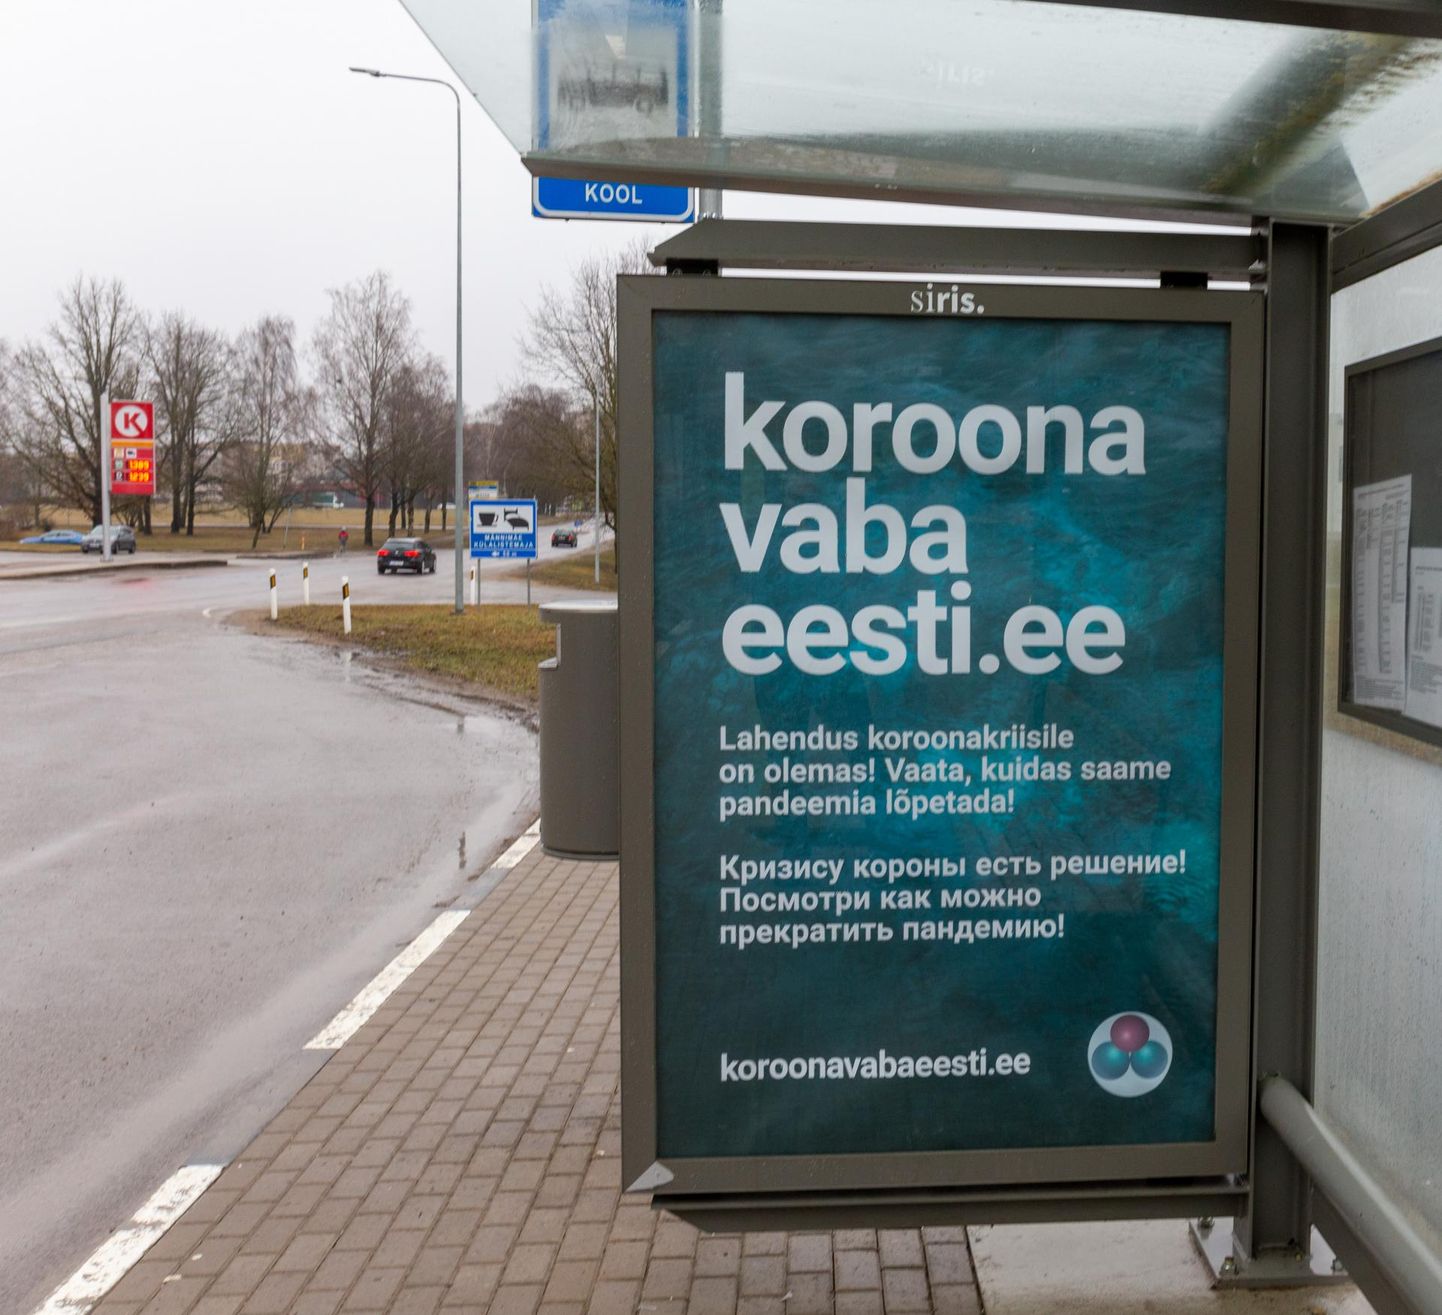 Märtsi lõpus ilmusid Viljandi tänavatele suured plakatid, mis juhatasid soovijad veebileheni, kus propageeriti kloordioksiidi kui imeravimit koroonaviiruse vastu.